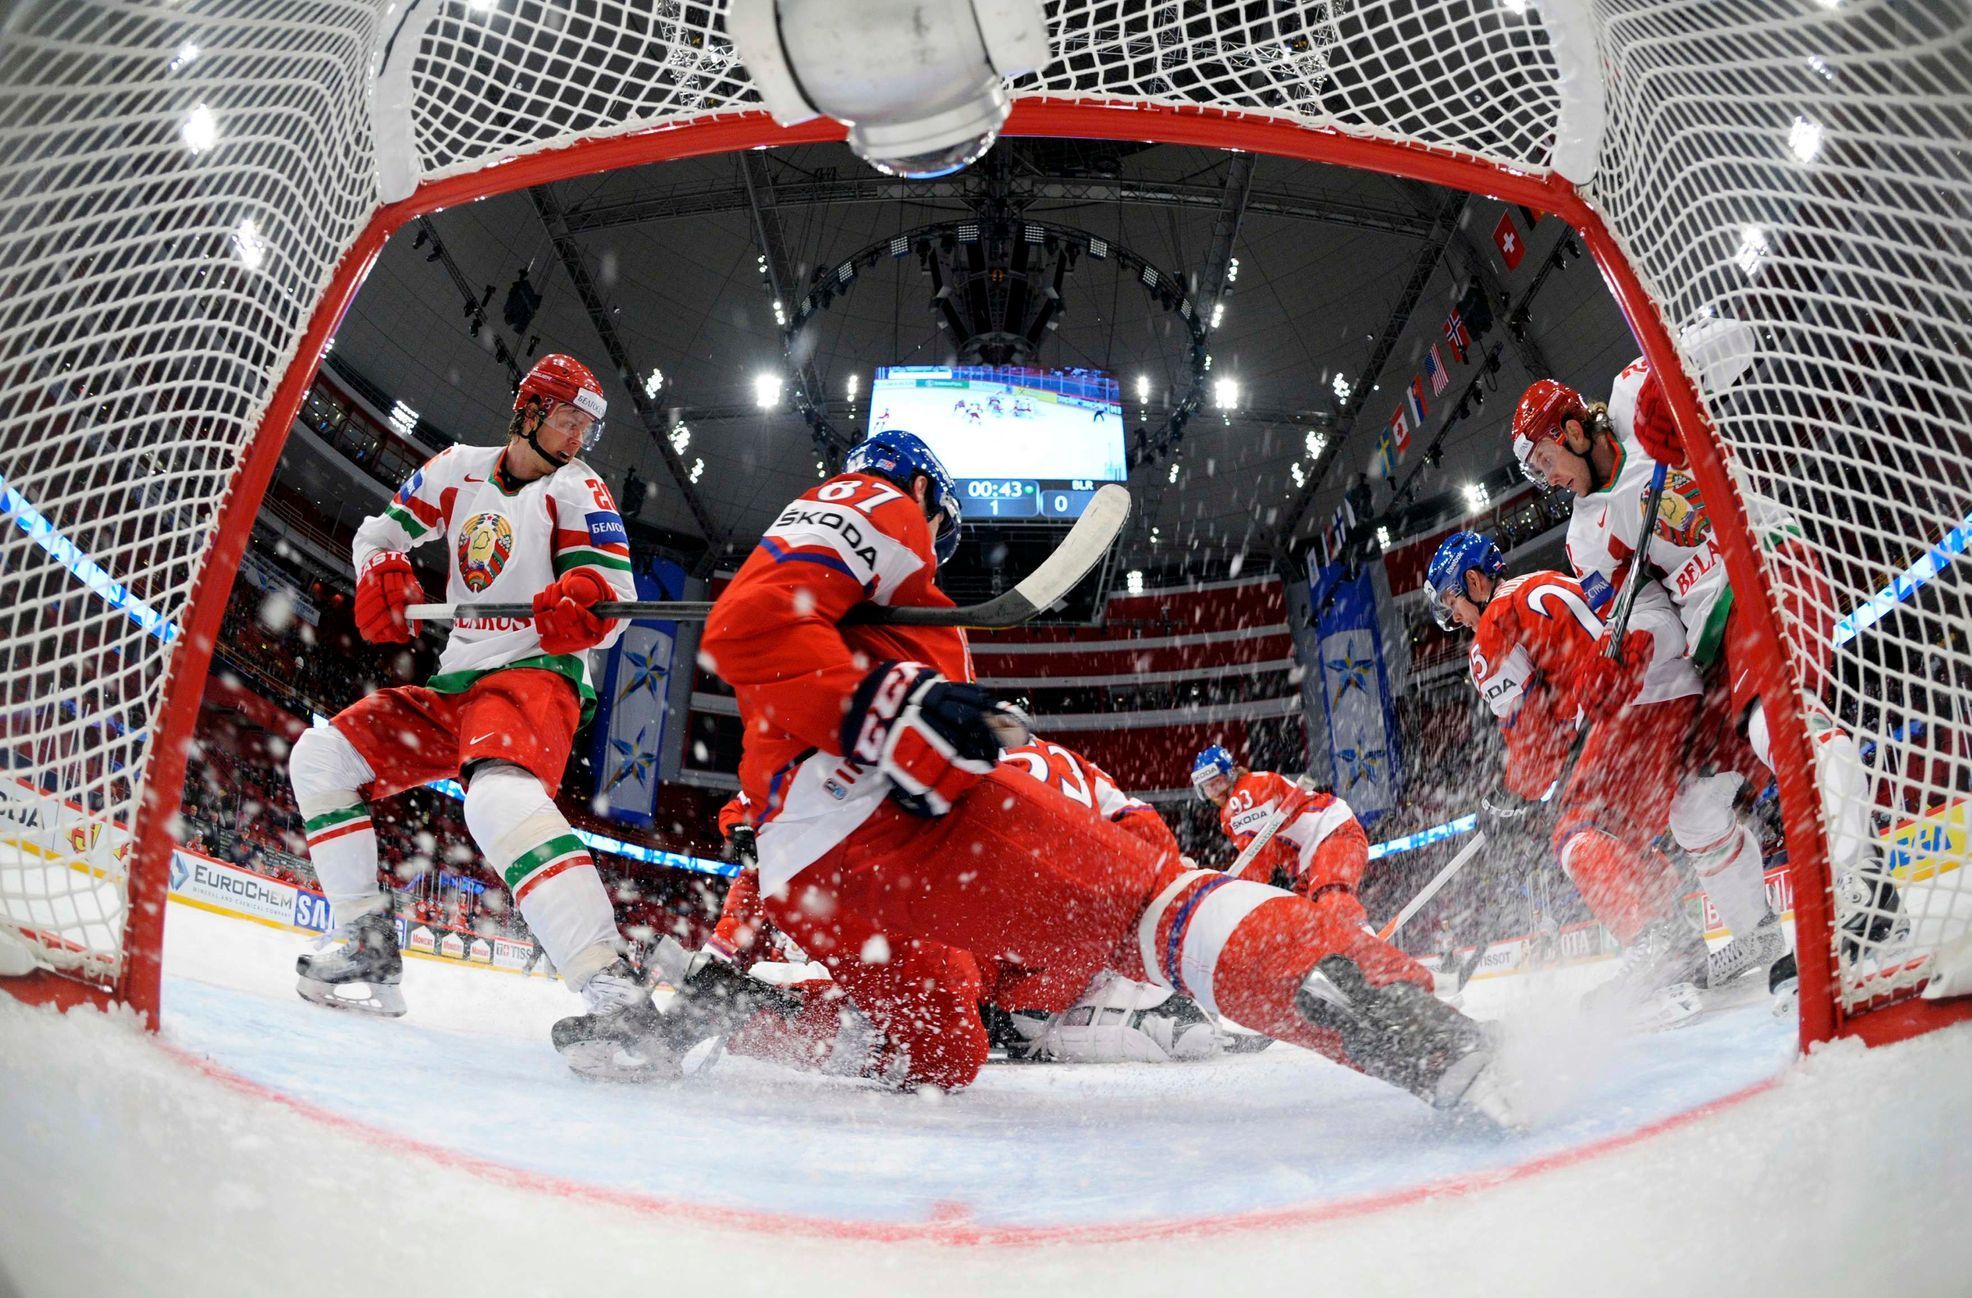 MS v hokeji 2013, Česko - Bělorusko